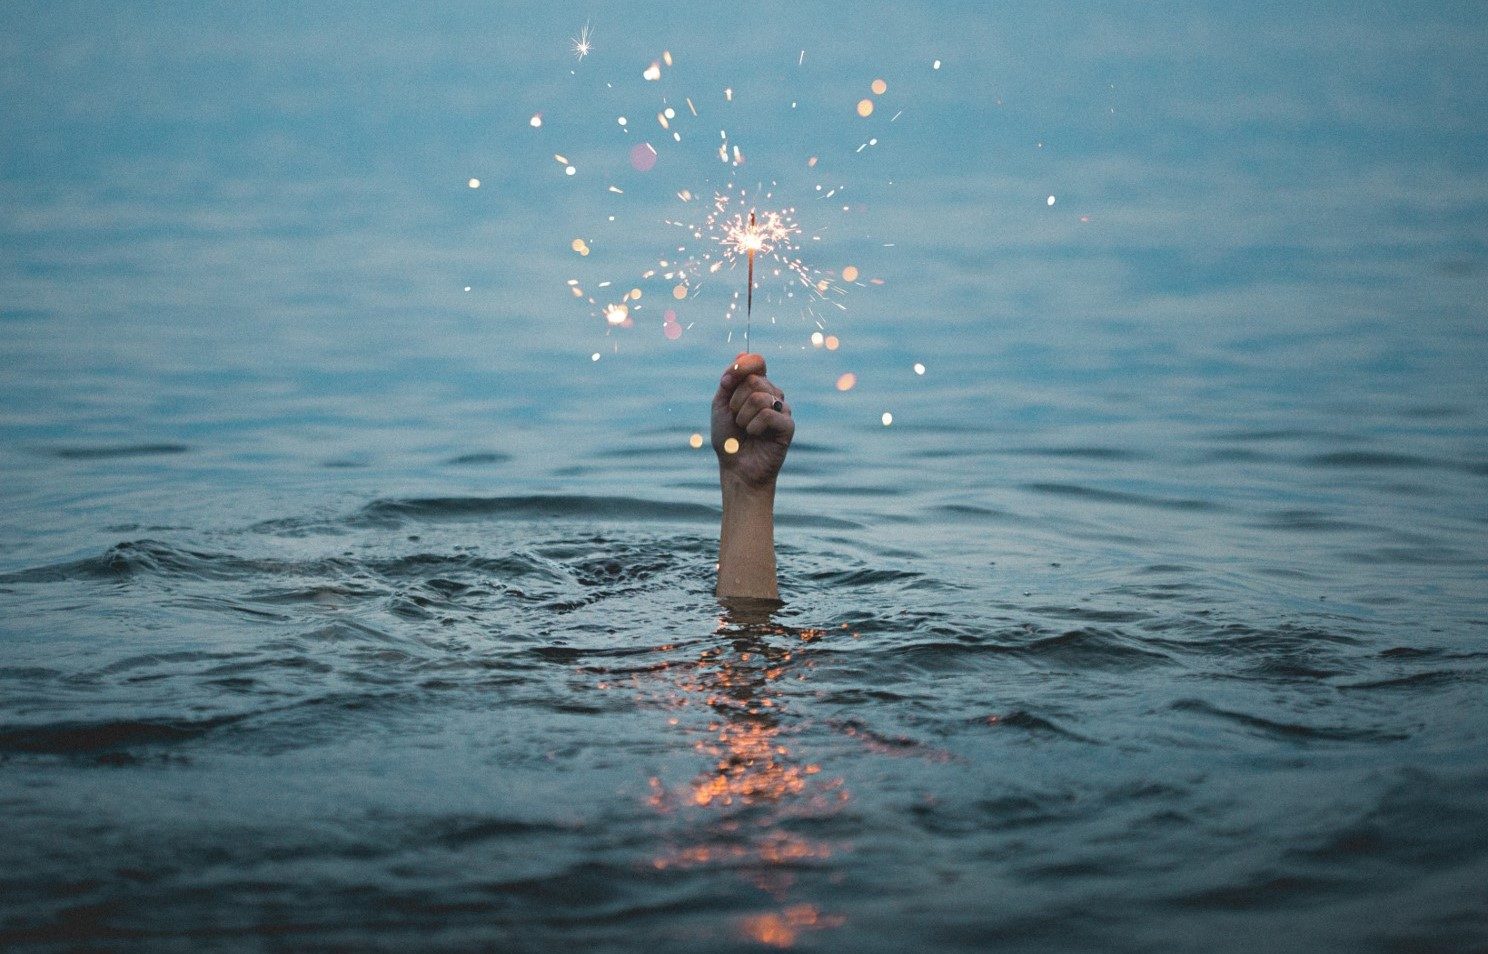 Water sprinkler soul fireworks